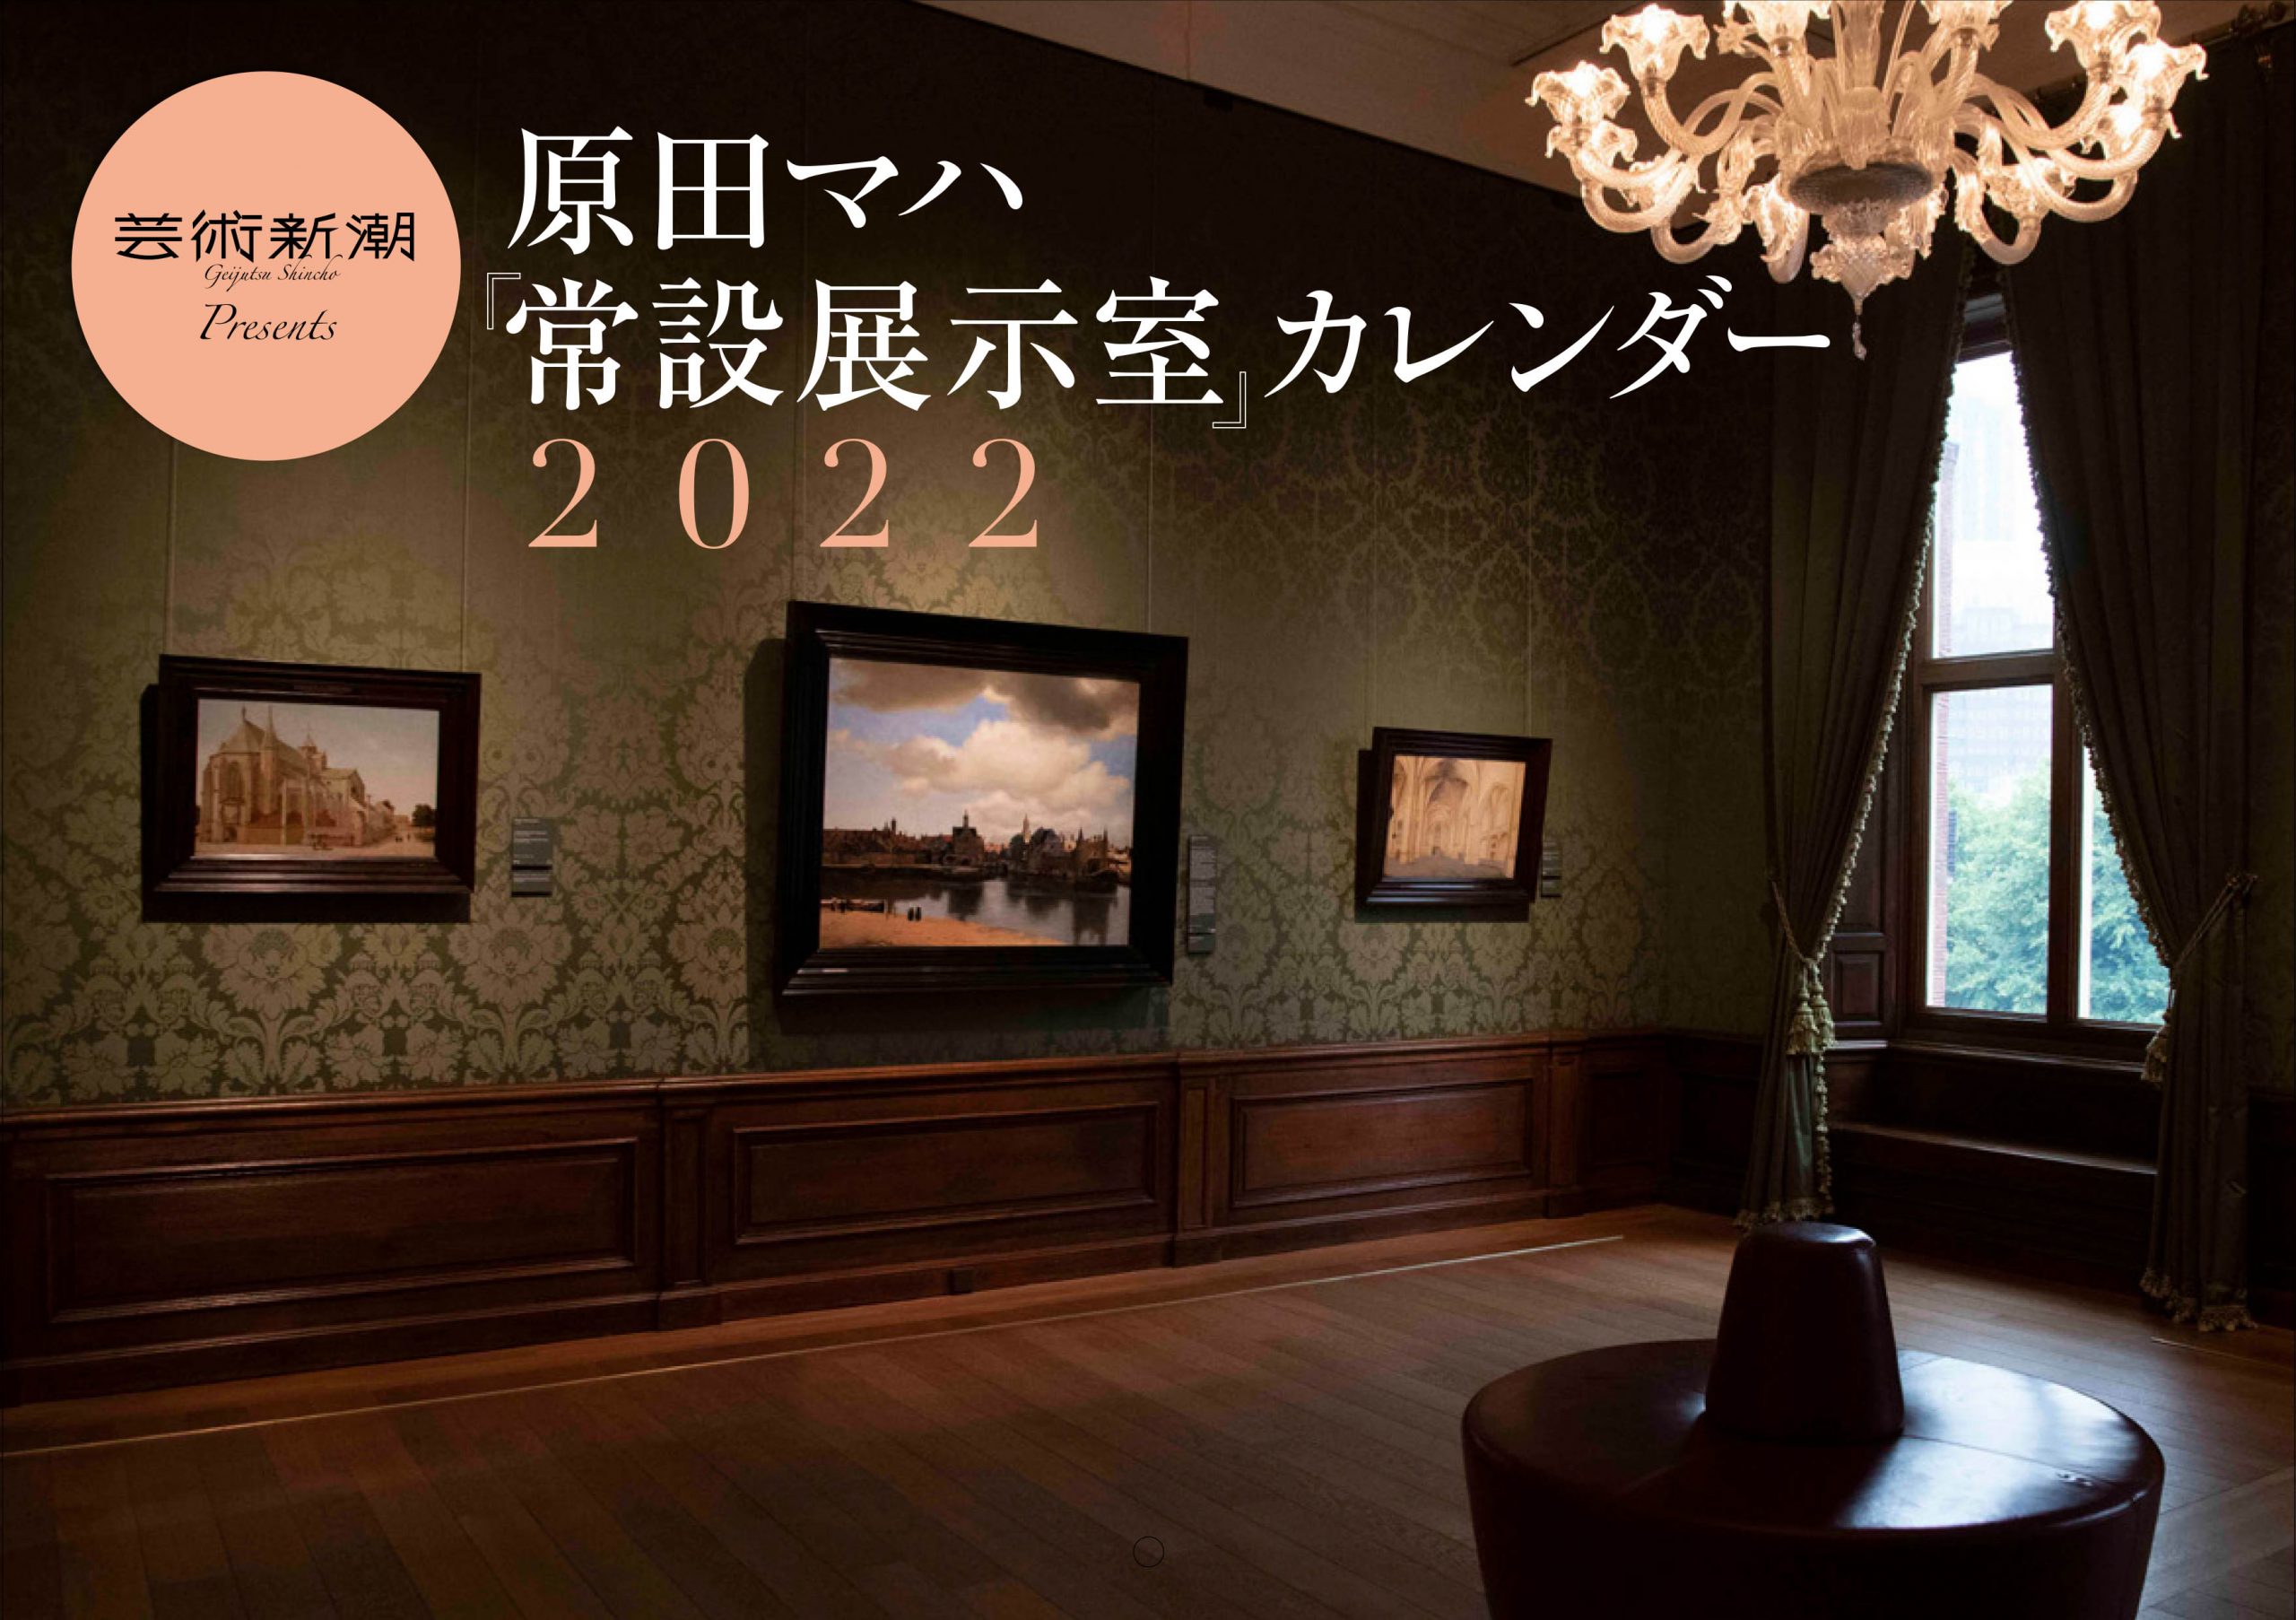 芸術新潮Presents原田マハ 『常設展示室』カレンダー2022 | 新潮社 AD